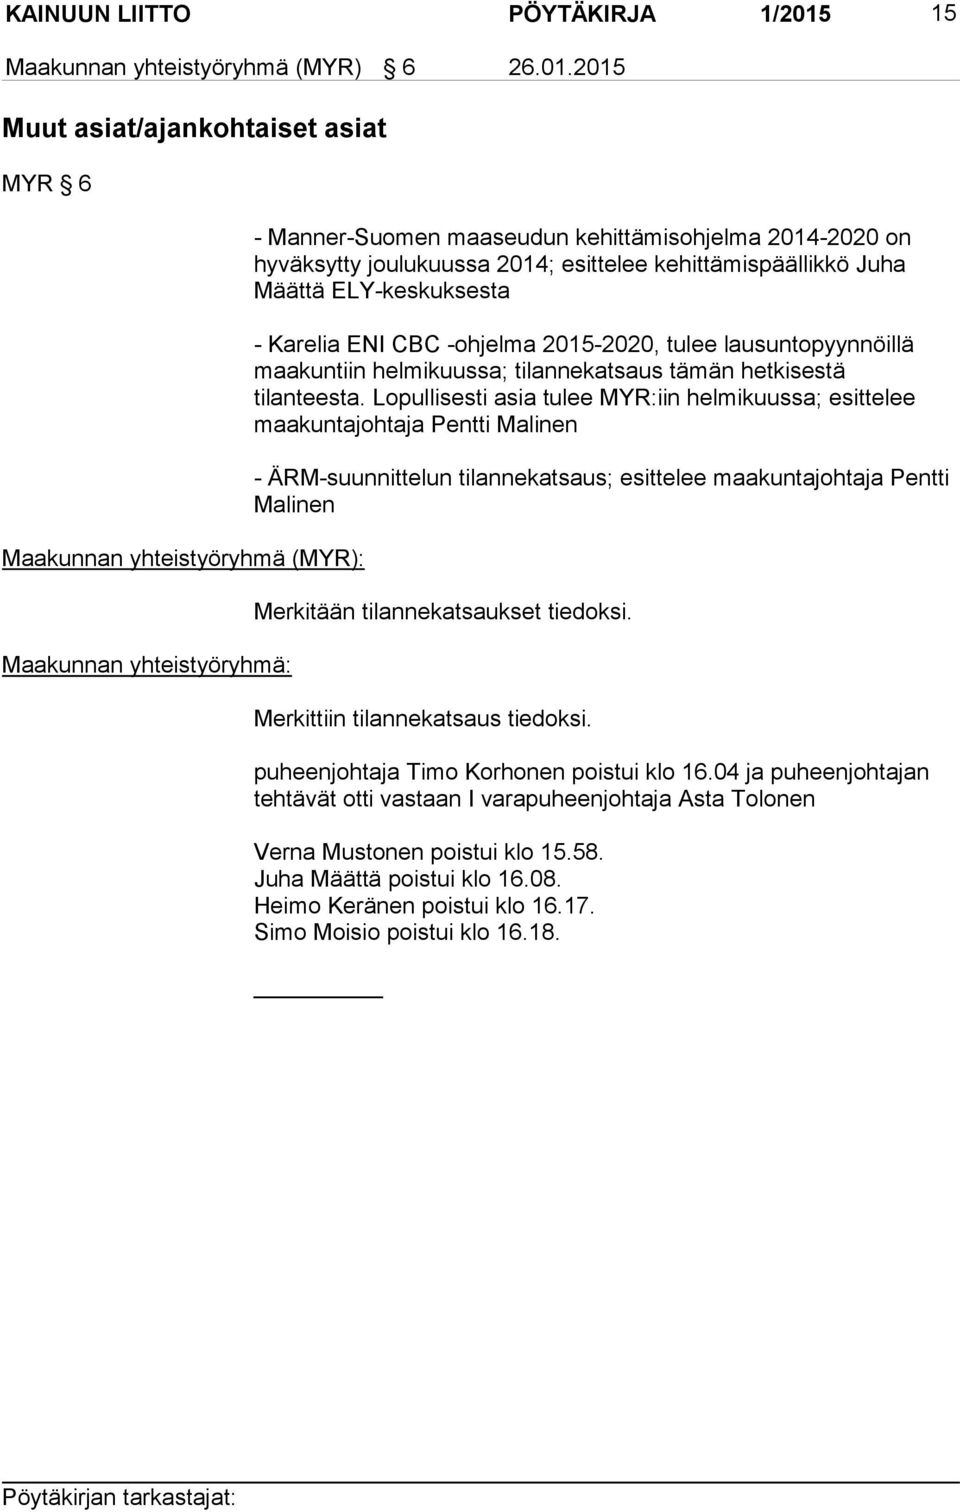 2015 Muut asiat/ajankohtaiset asiat MYR 6 Maakunnan yhteistyöryhmä (MYR): Maakunnan yhteistyöryhmä: - Manner-Suomen maaseudun kehittämisohjelma 2014-2020 on hyväksytty joulukuussa 2014; esittelee